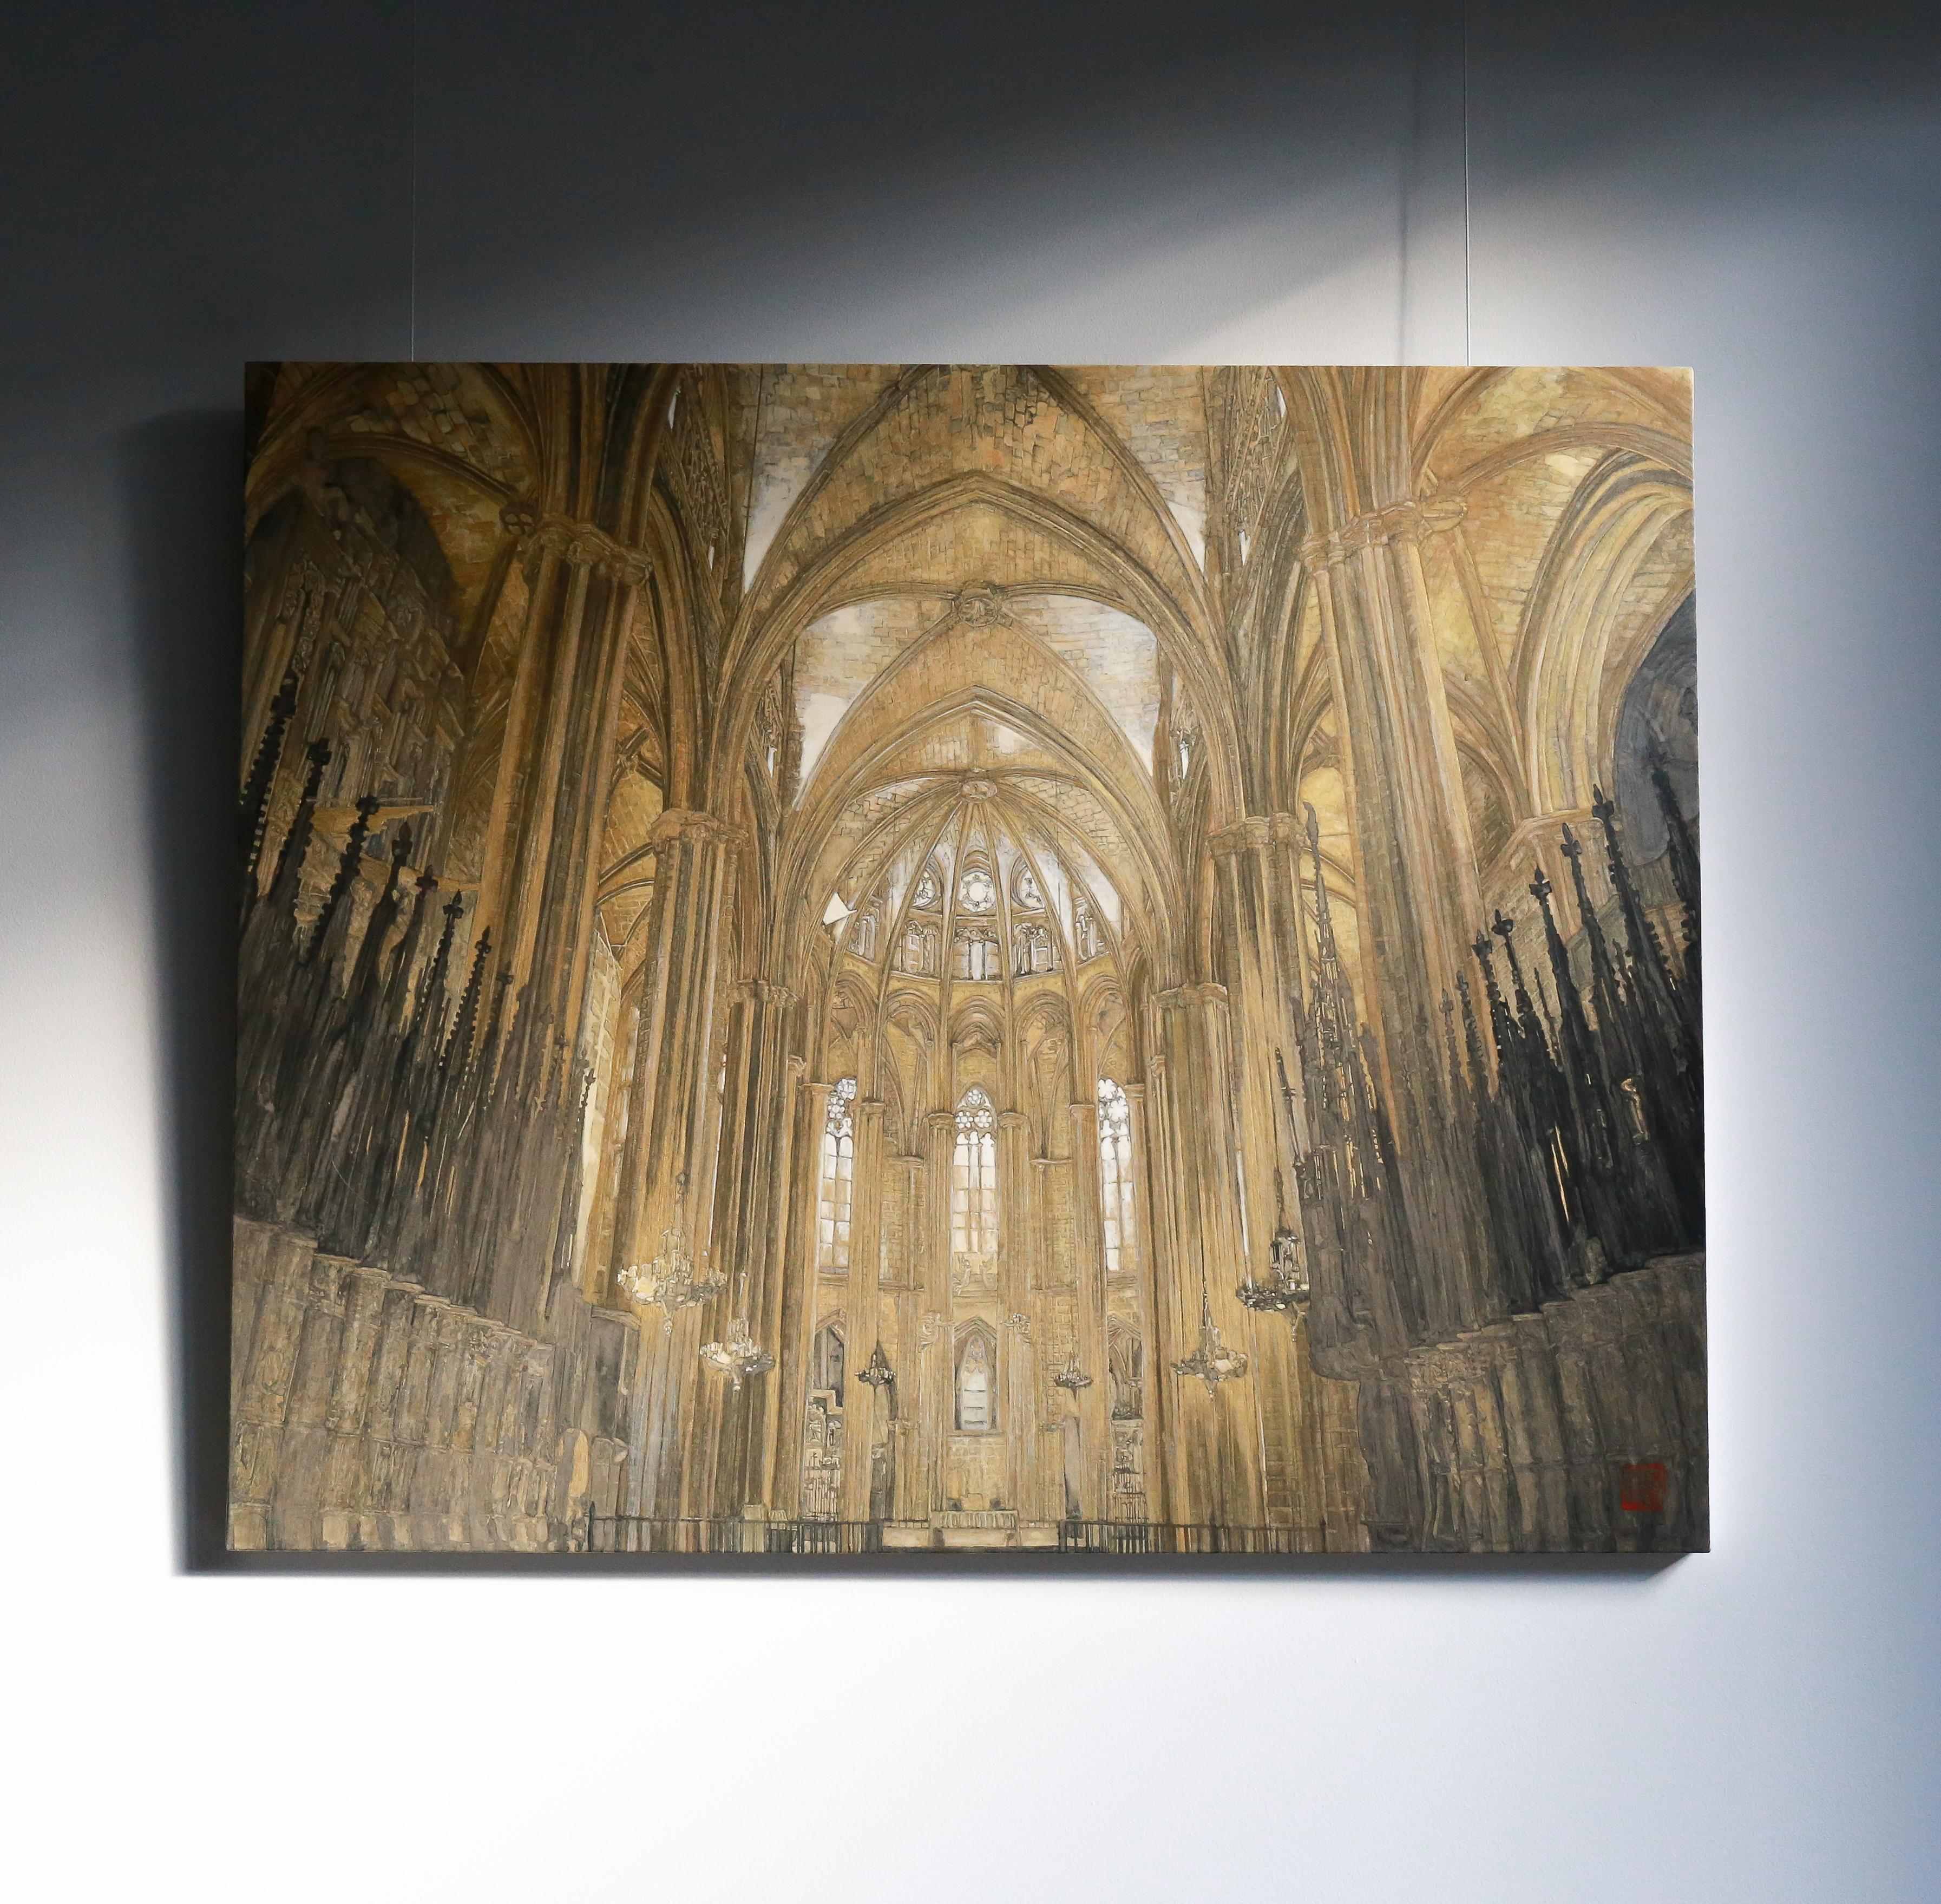 Barcelona- Kathedrale – 24 Karat Gold und Mineralien, Architektur, Gotik, Realismus – Painting von Maria Mitsumori